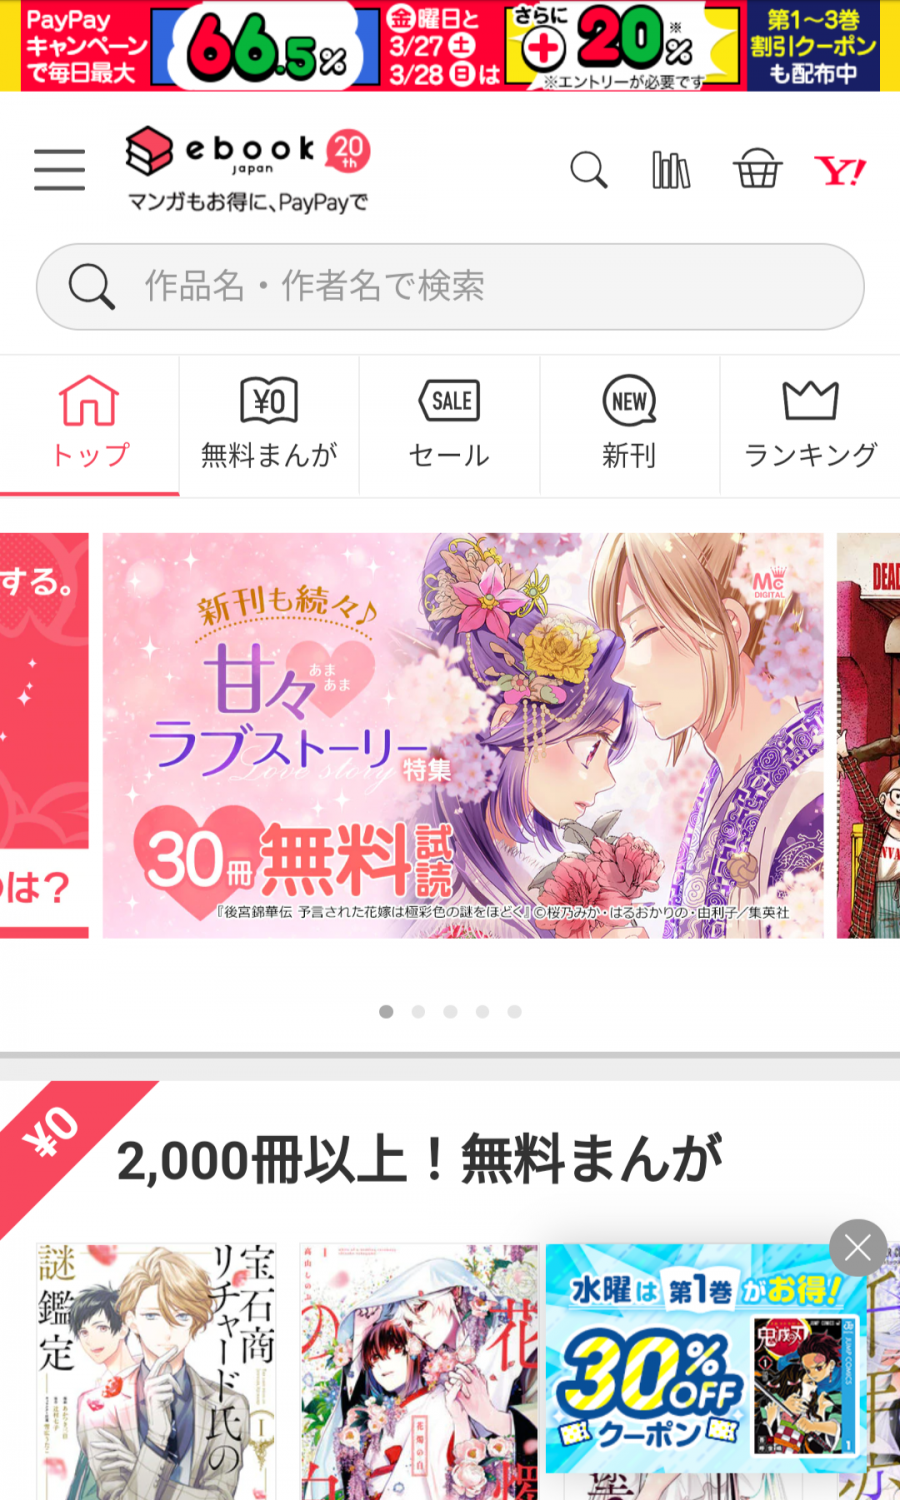 ebookJapan 公式サイトのトップページ